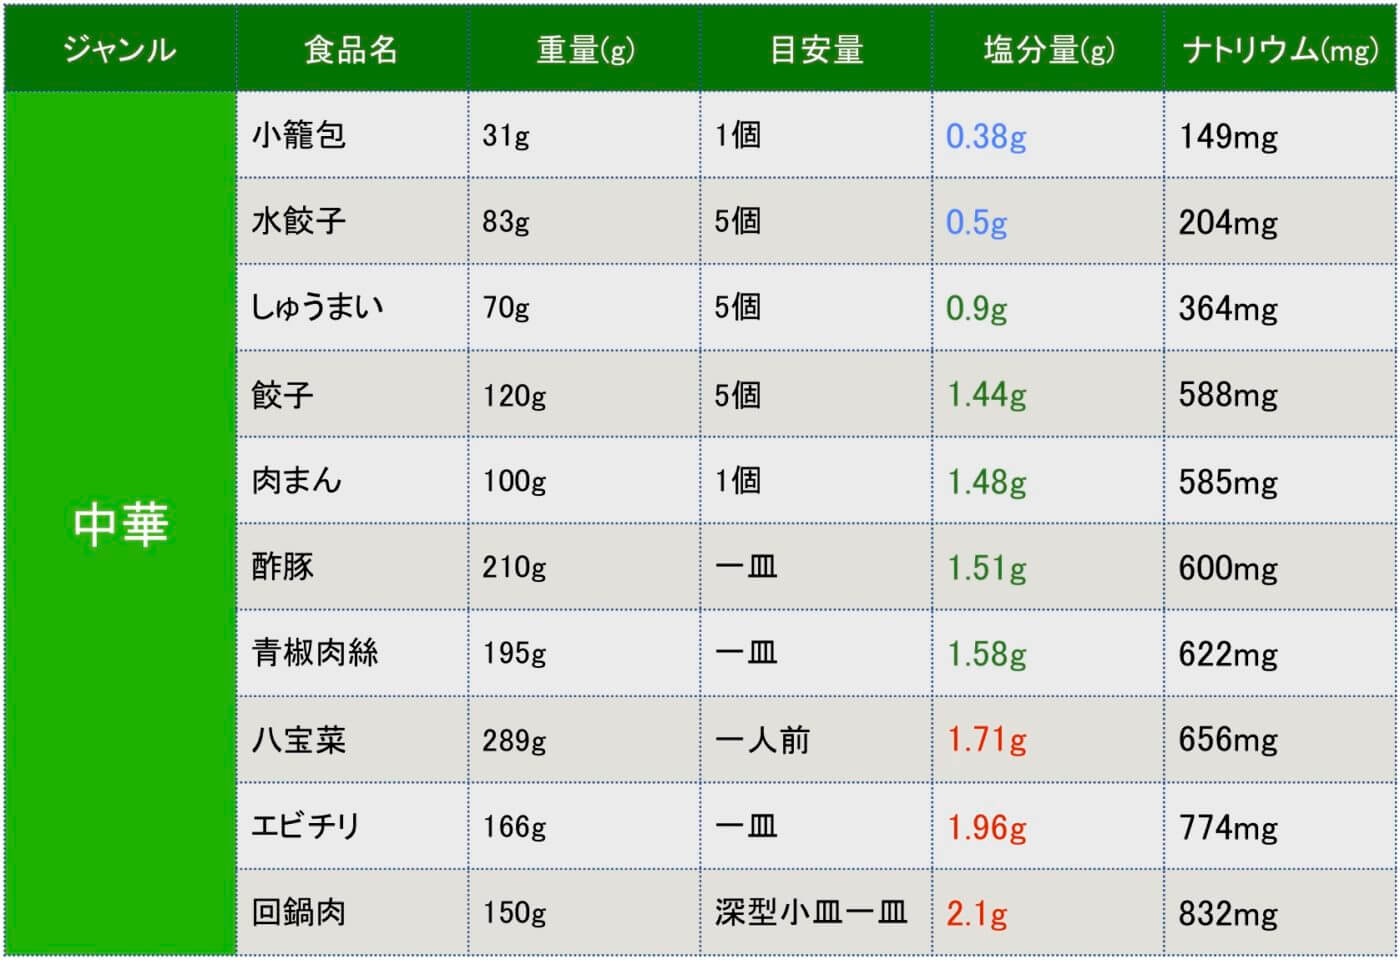 中華の惣菜の塩分の一覧表